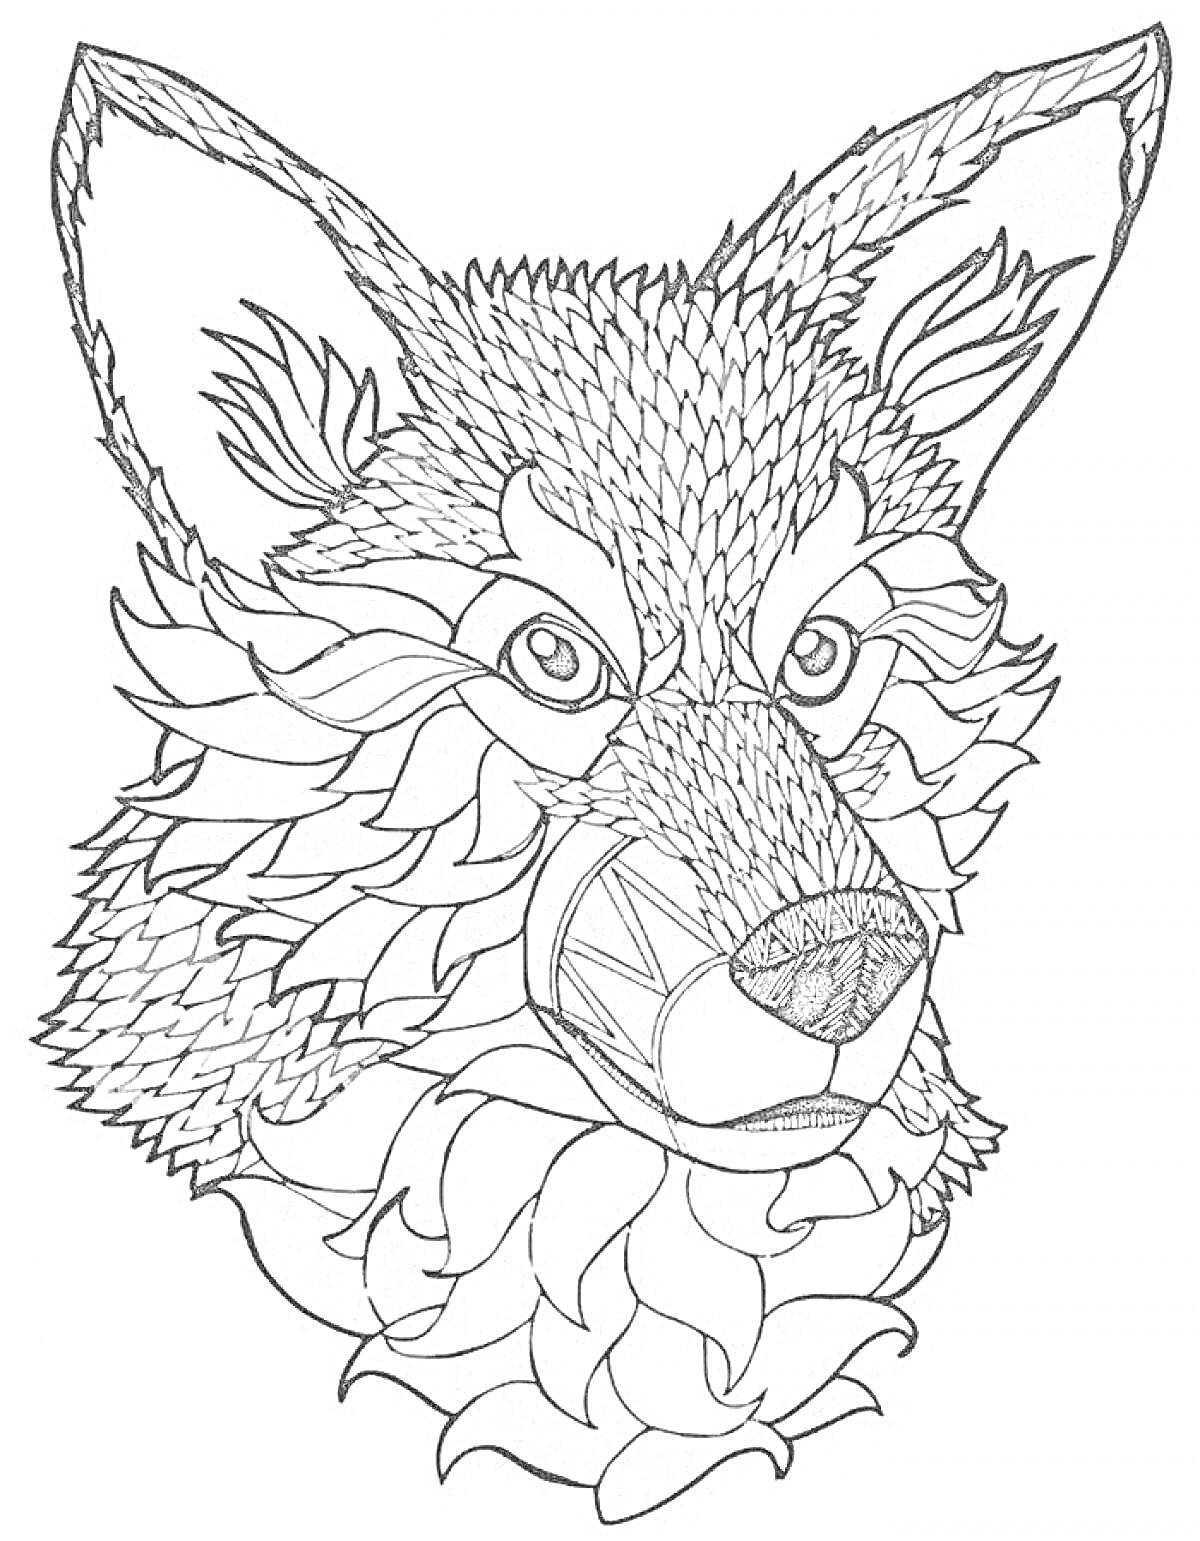 Раскраска Волк с детализированным узором на шкуре и морде